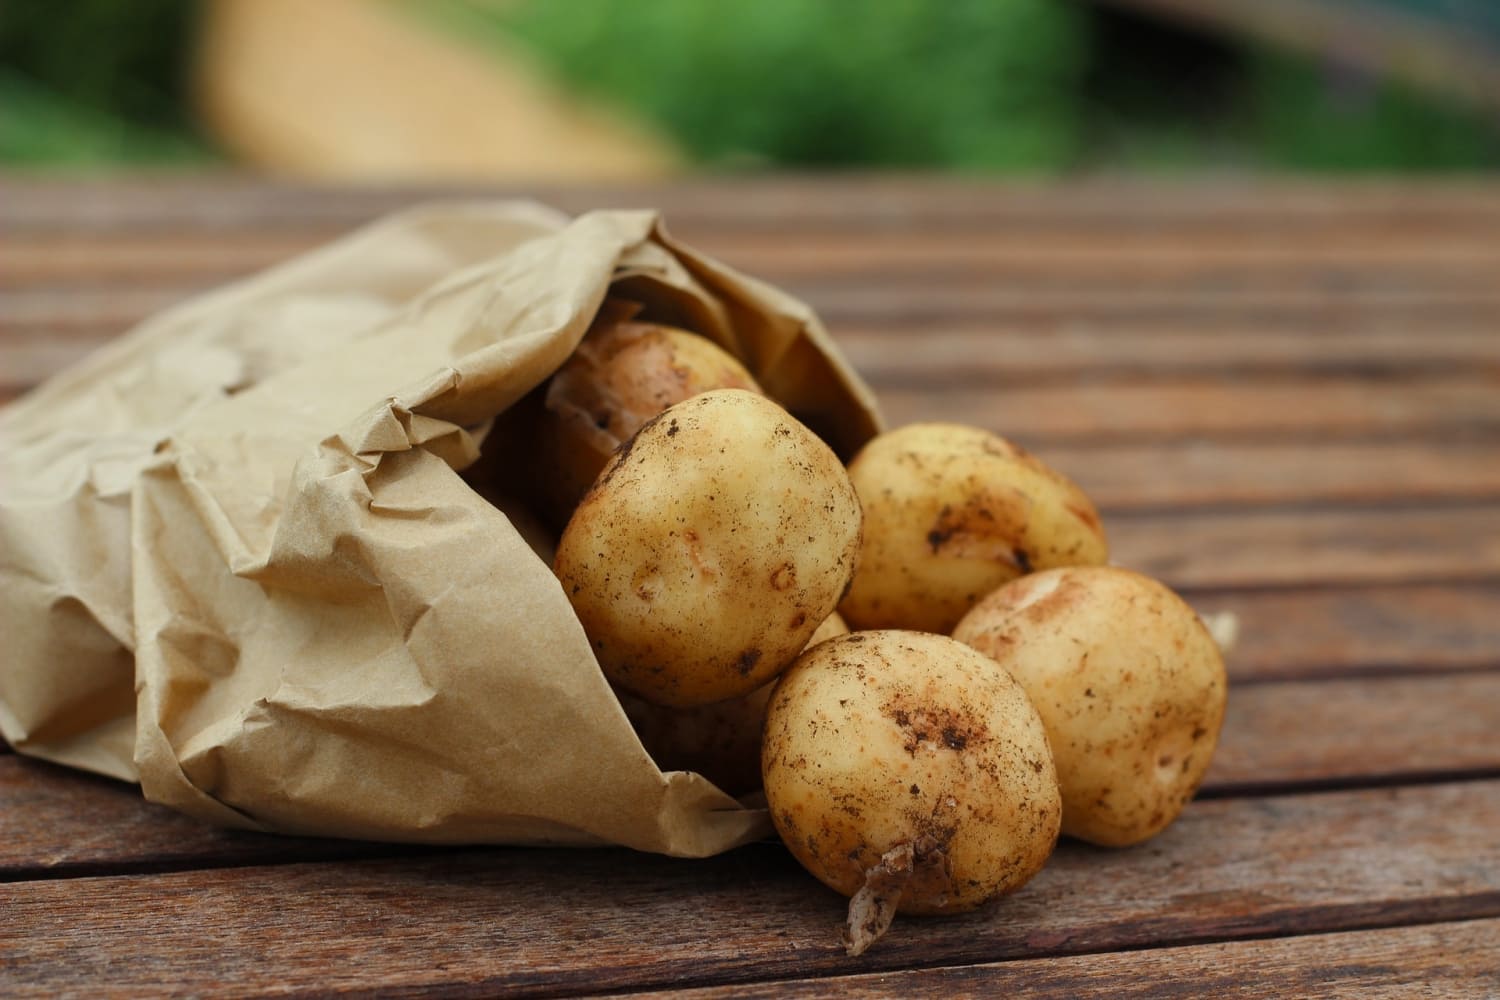 "Україна буде повністю забезпечена картоплею по прийнятній ціні", - експерт НААН